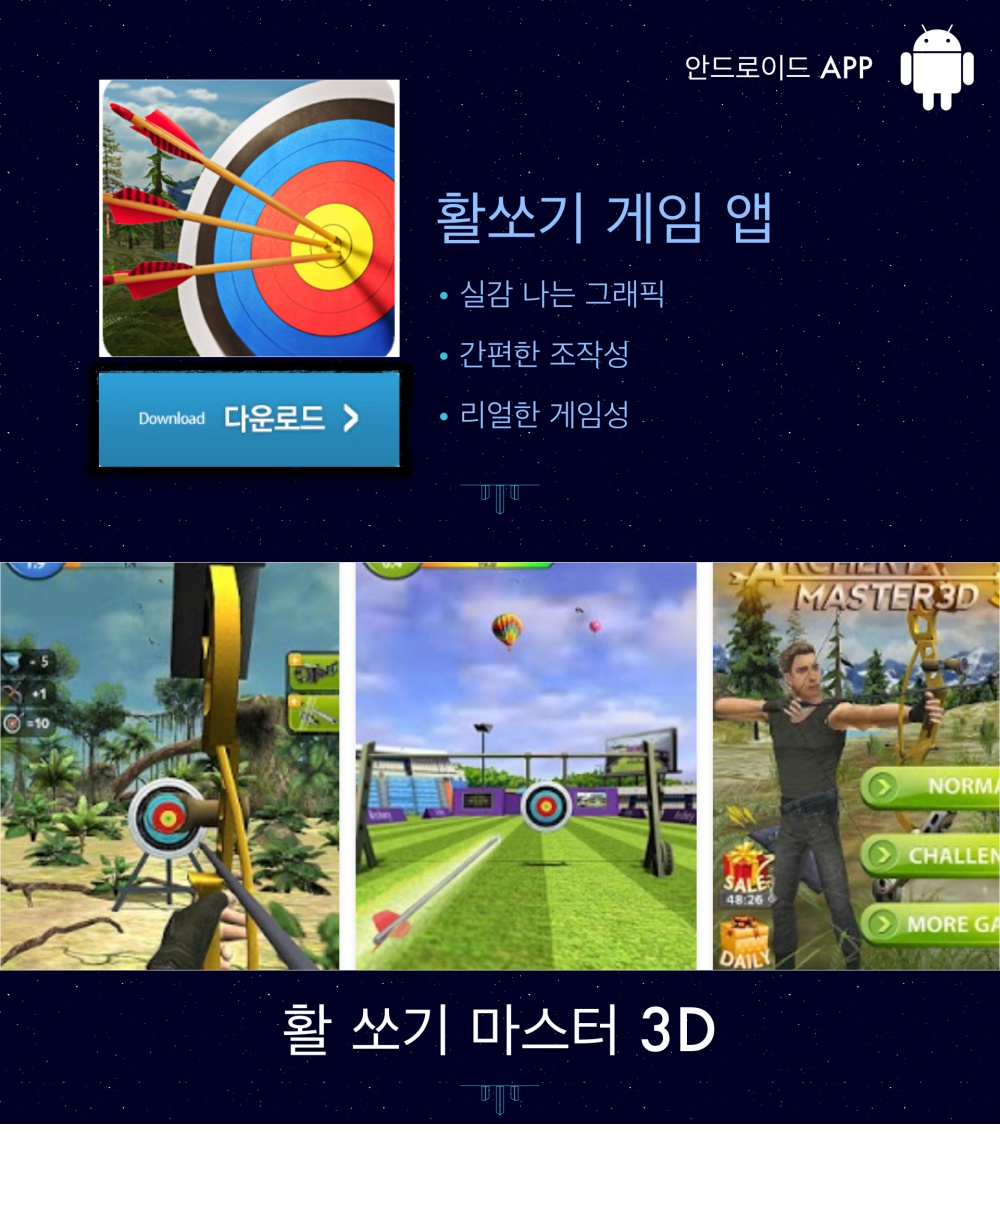 https://play.google.com/store/apps/details?id=com.junerking.archery